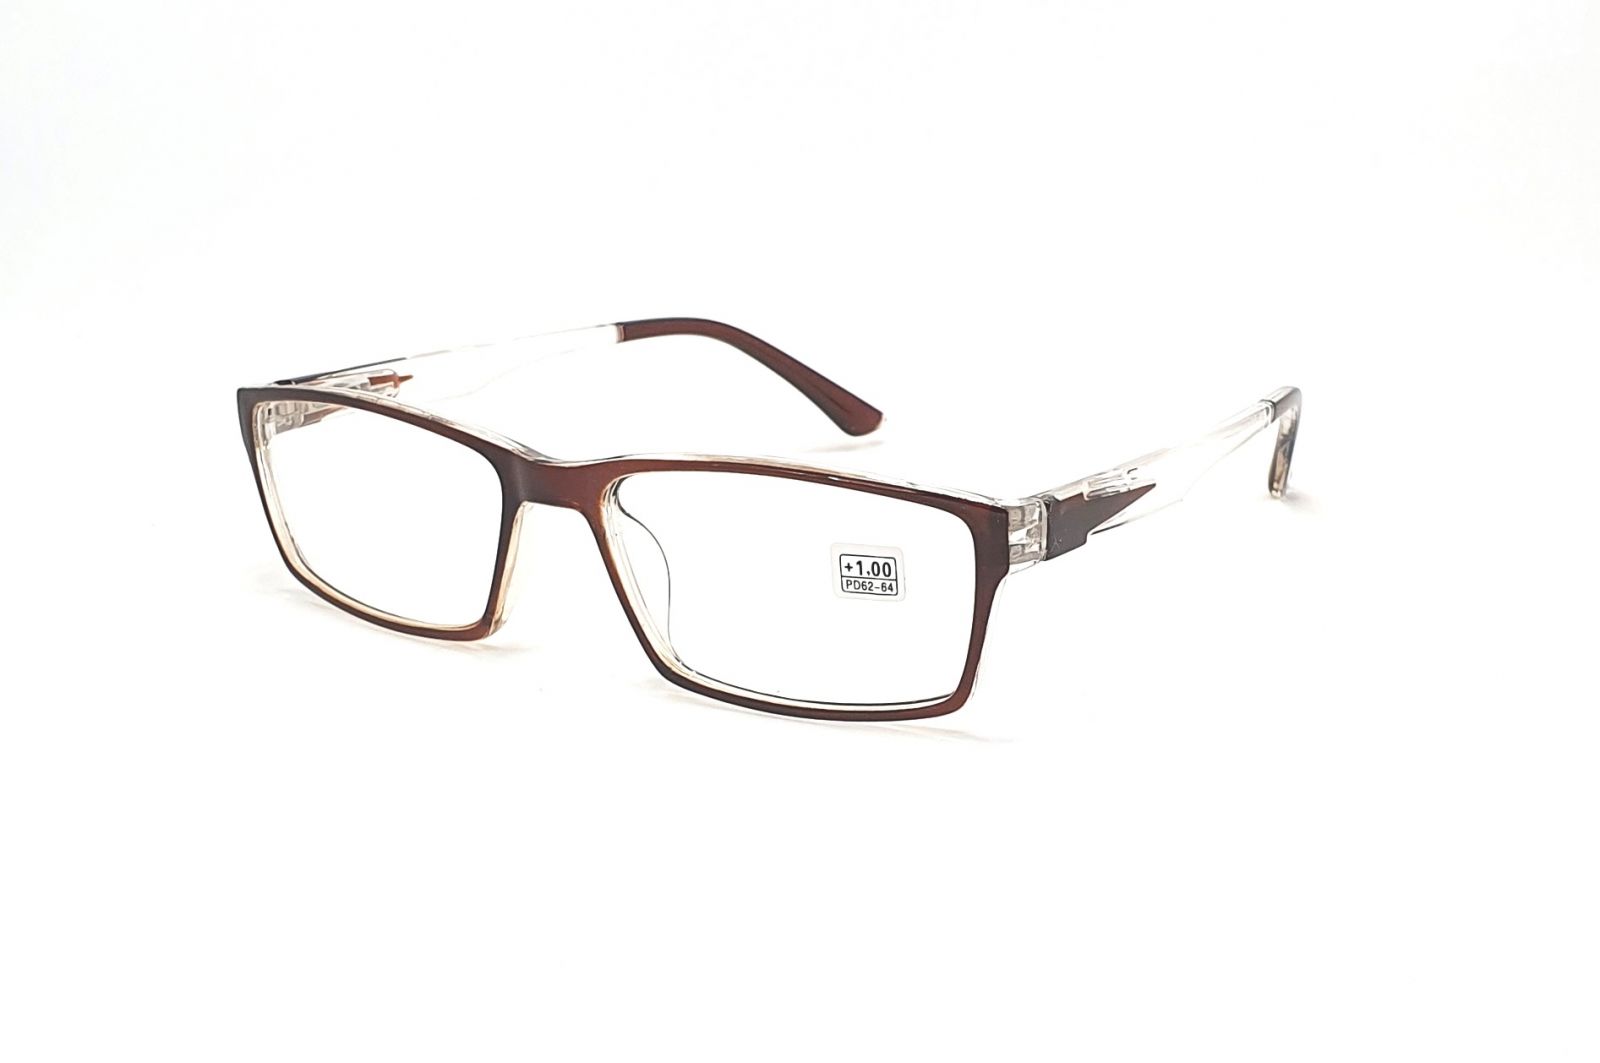 Dioptrické brýle ZH2111 +1,00 brown flex